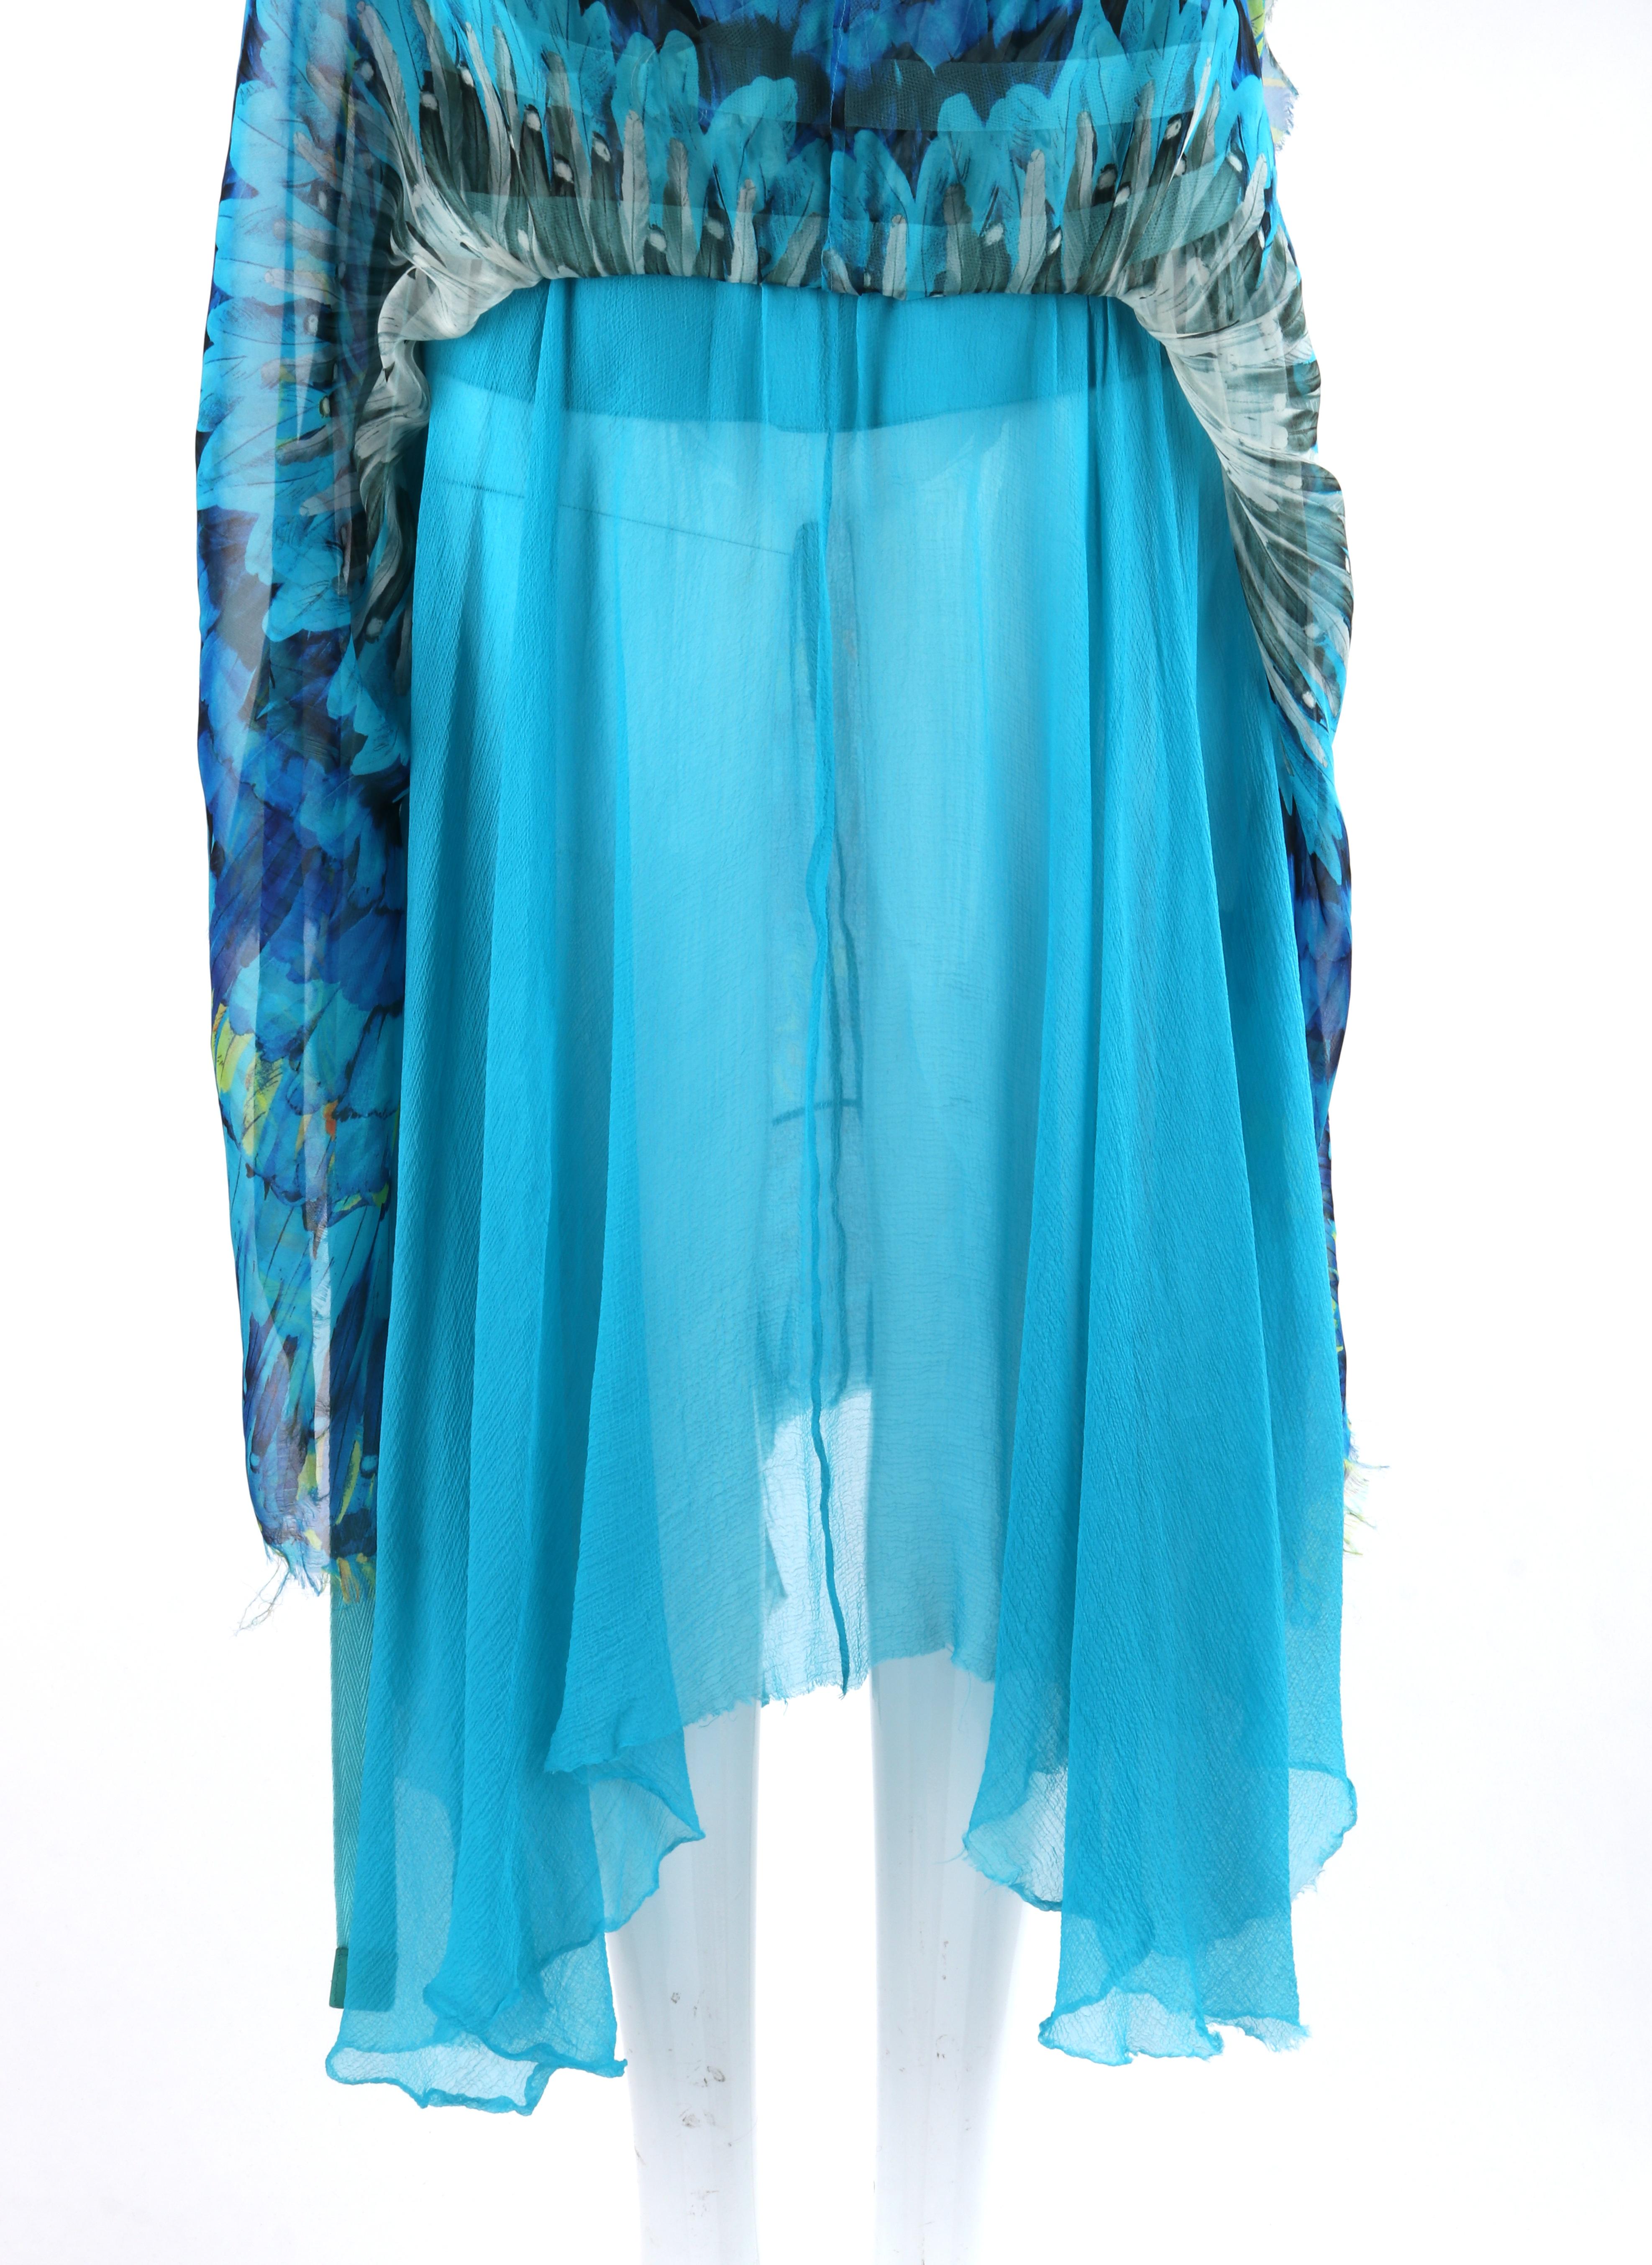 ALEXANDER McQUEEN S/S 2003 “Irere” Blue Feather Silk Handkerchief Hem Midi Skirt 4